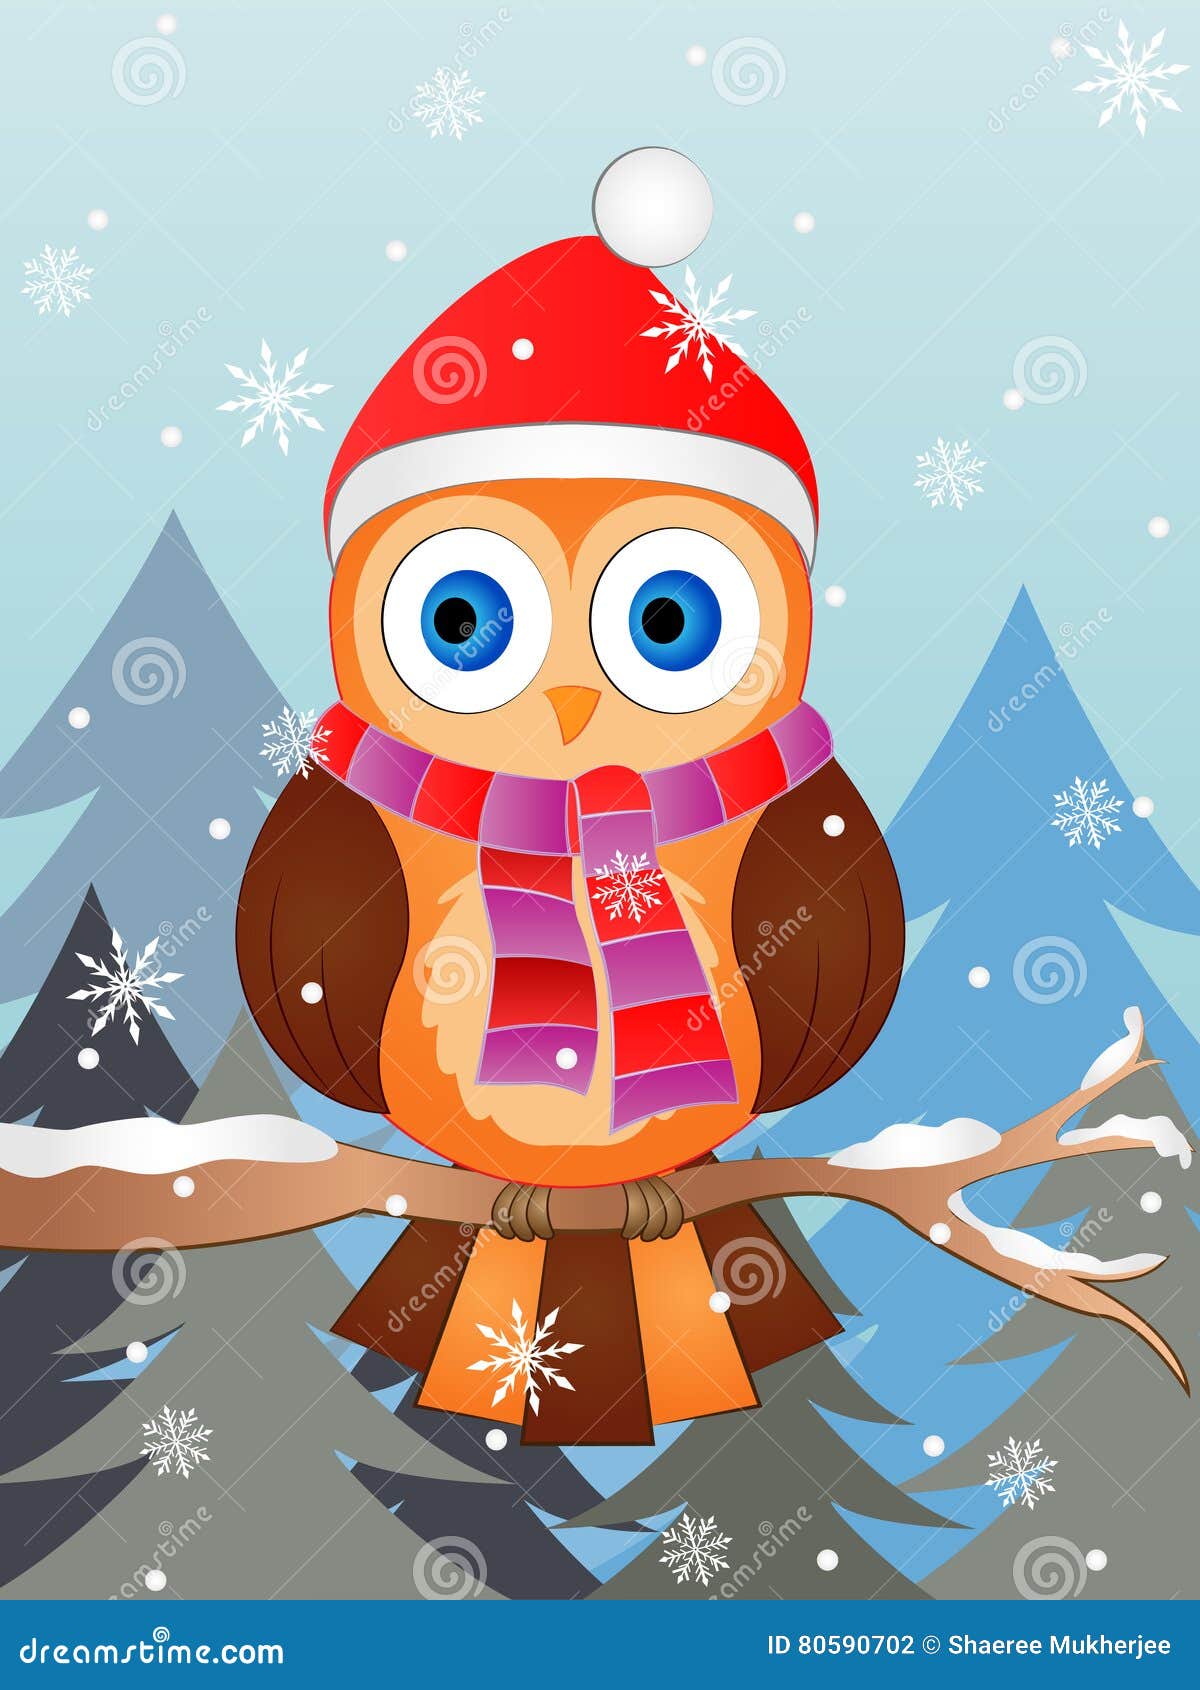 Winter Owl Vector Illustration Stock Vector - Illustration ...